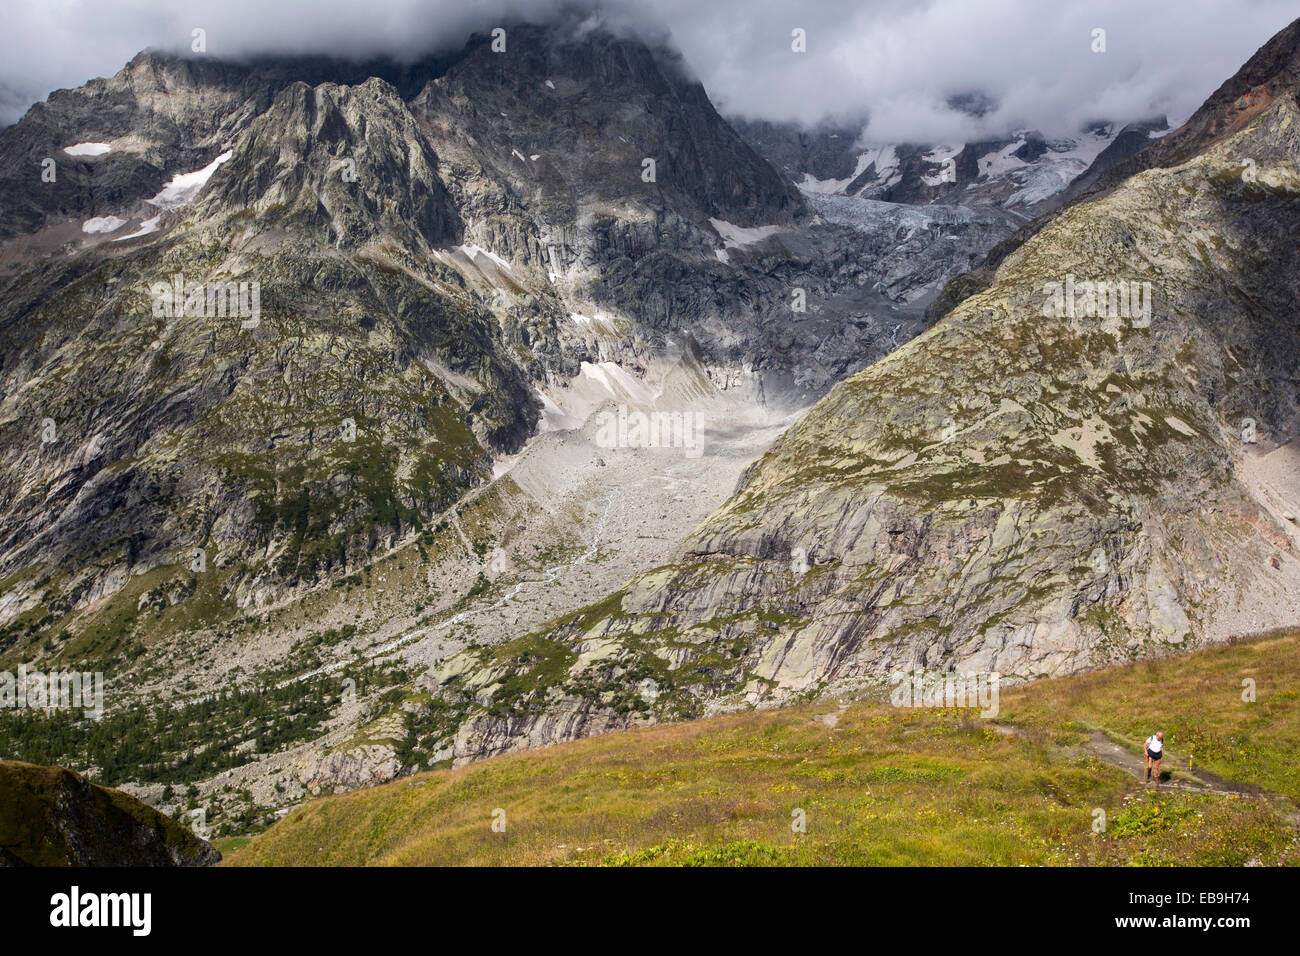 The rapidly receding Glacier de pre de Bar in the Mont Blanc range, Italy. Stock Photo